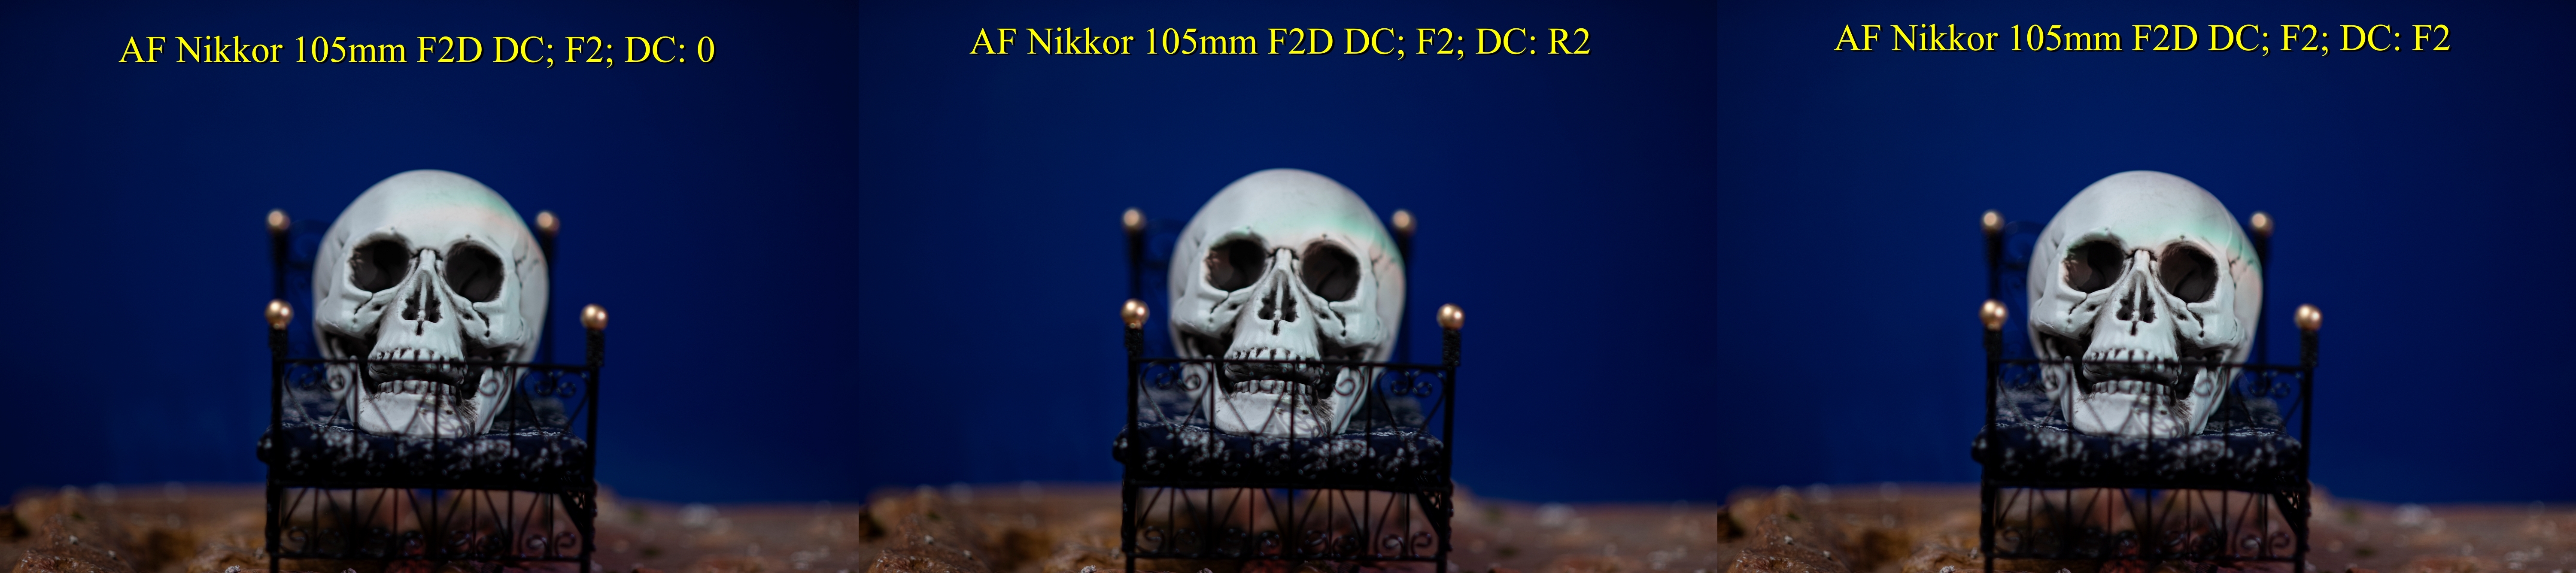 AF Nikkor 105mm F2D DC_C006481 skull